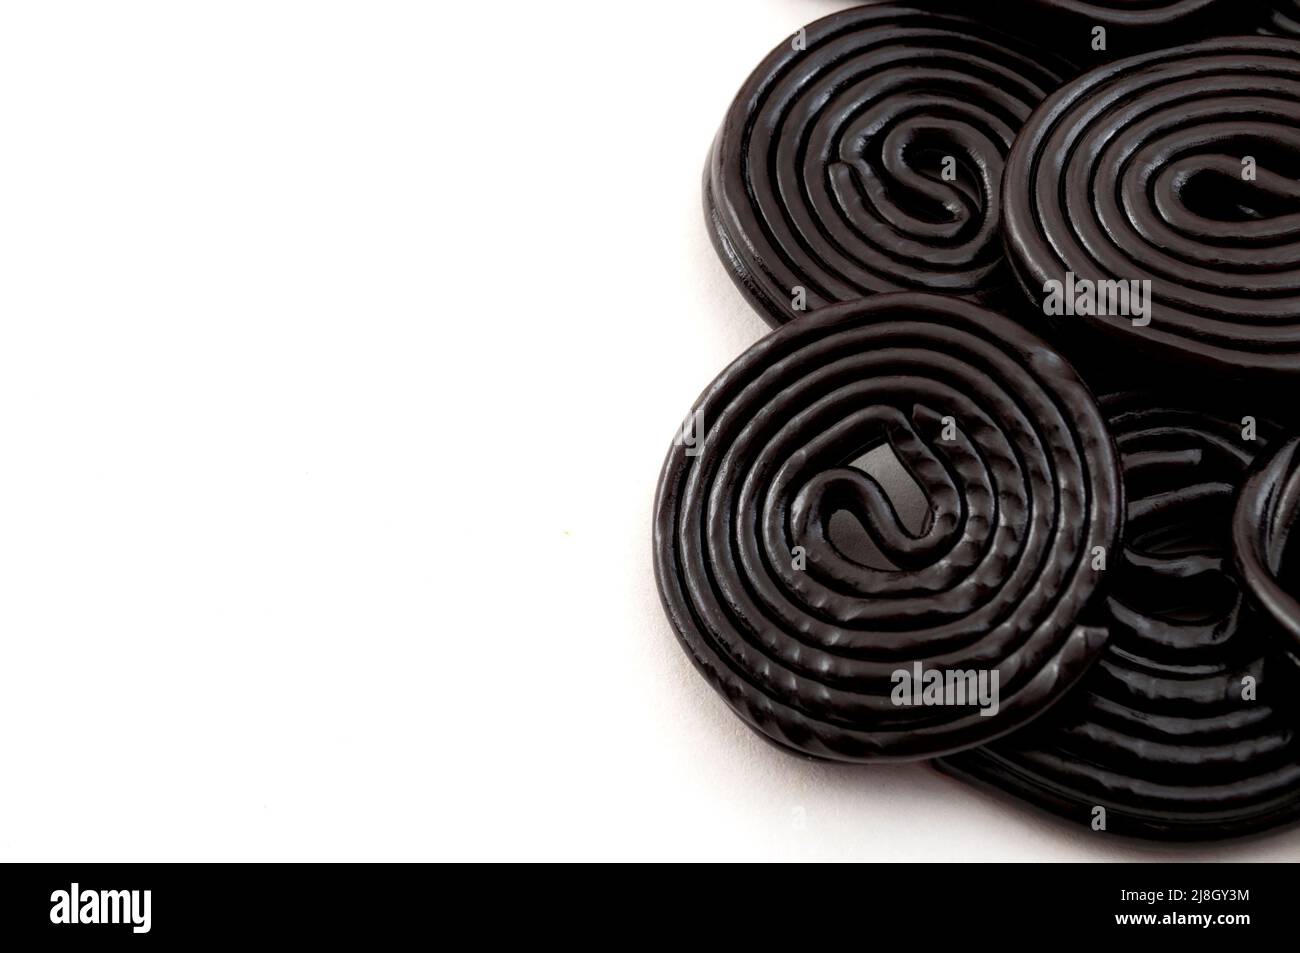 Spirales de réglisse noires, bonbons et délicieux dessert concept avec roues de réglisse qui sont aromatisées avec l'extrait de la racine du Glycyr Banque D'Images